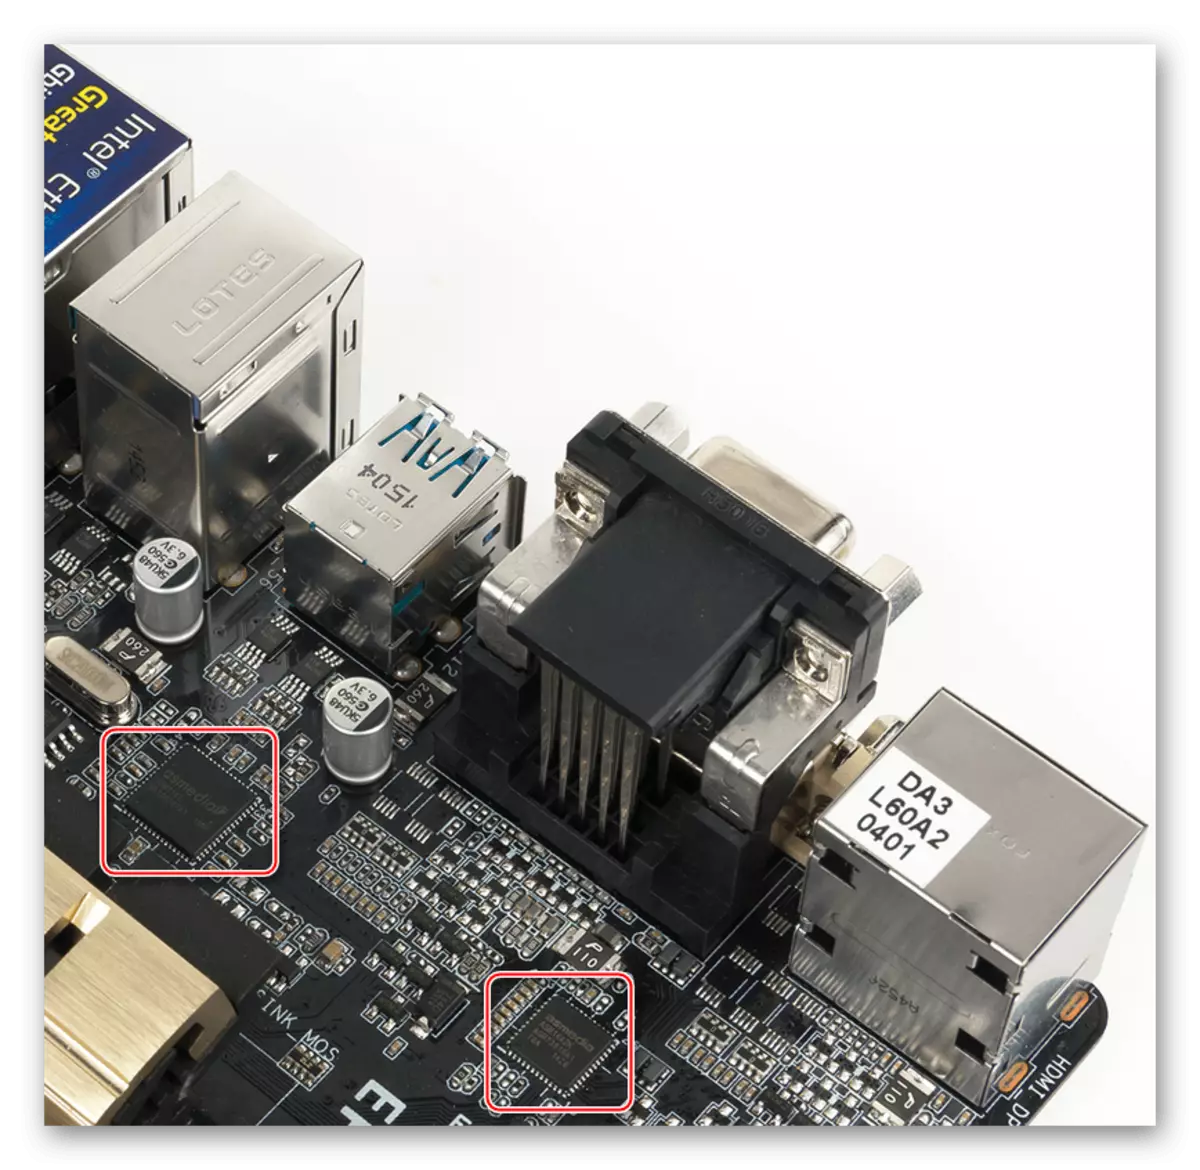 ASUS Z97-ausb placa base de l'regulador de l'USB 3.1